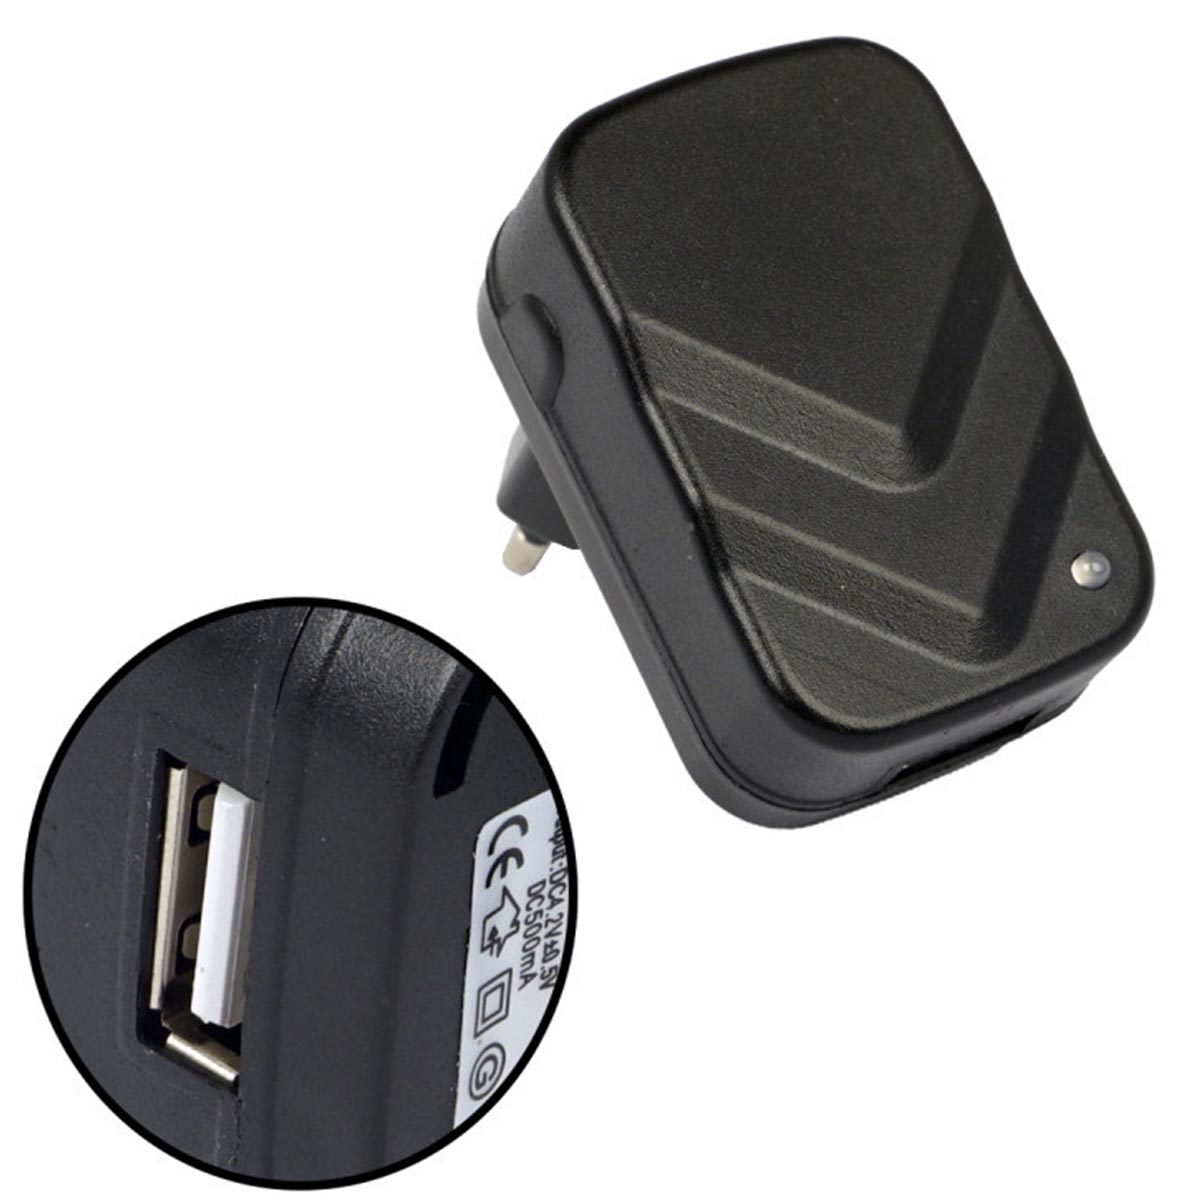 СЗУ (сетевое зарядное устройство) LP101, 1 USB порт, 4.2V, 0.5A, цвет черный